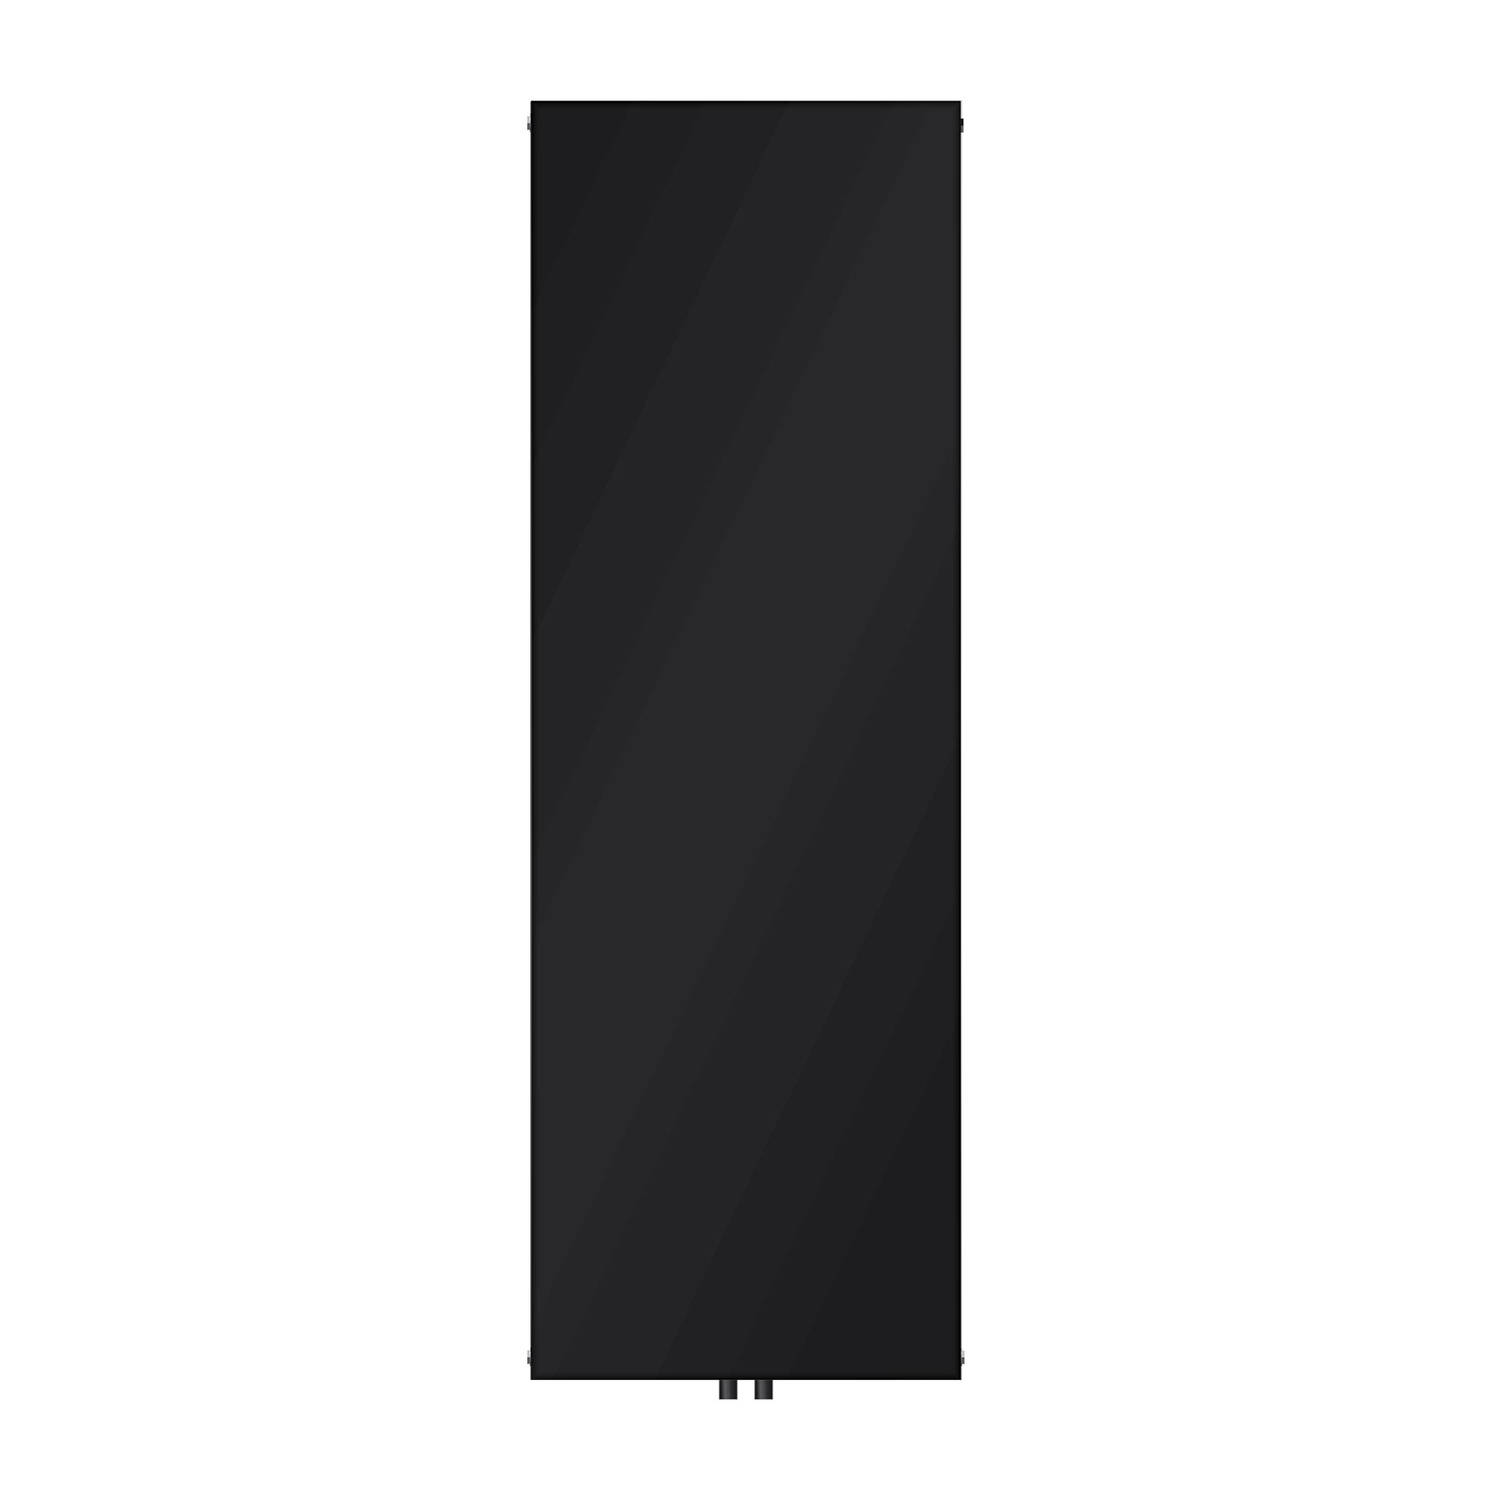 Paneelradiator Enkellaags 1800x604 mm Zwart mat met middenaansluiting LuxeBath